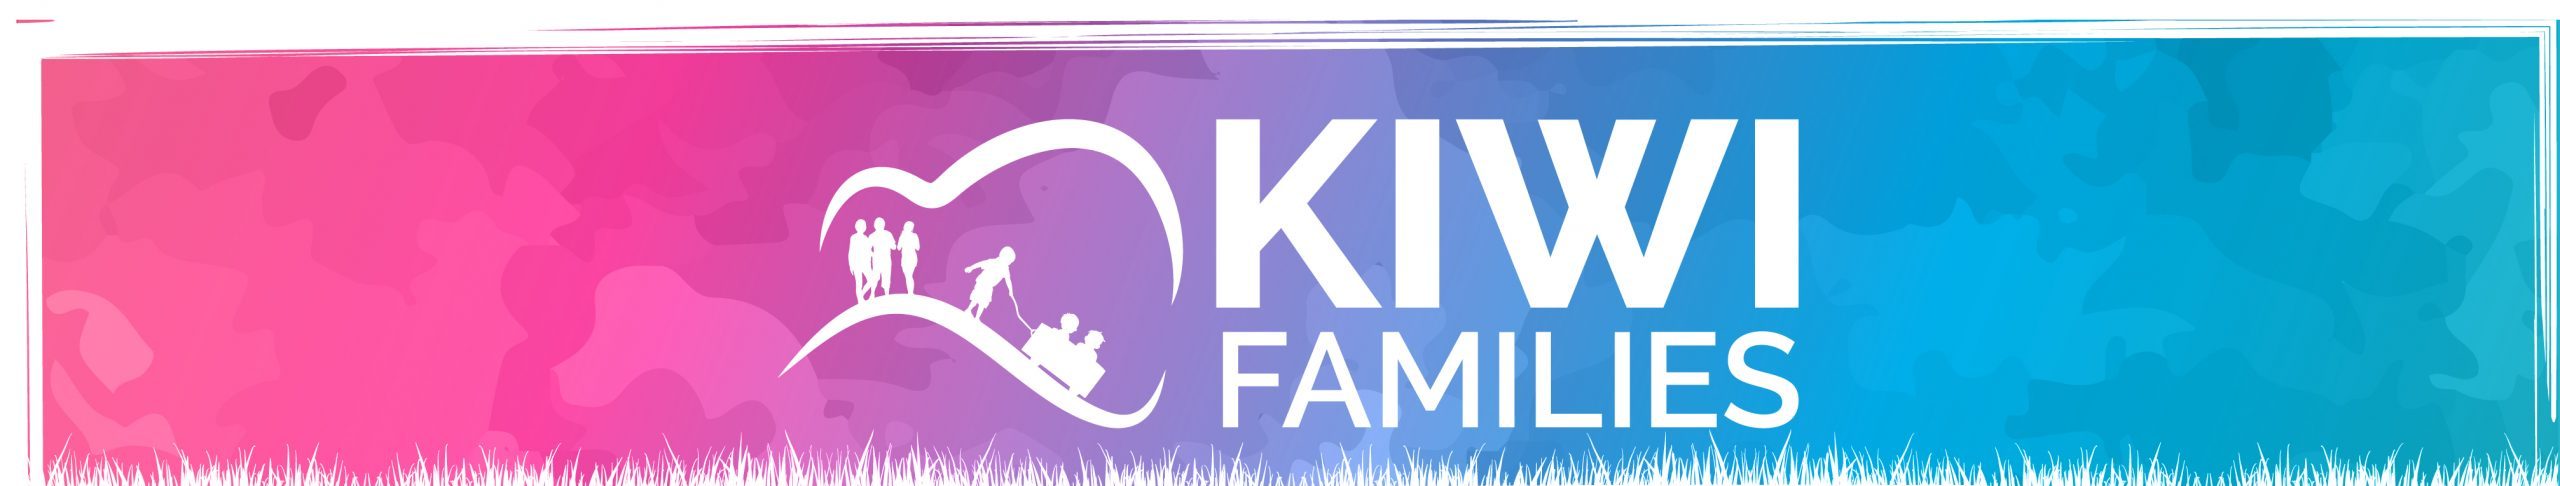 kiwi family